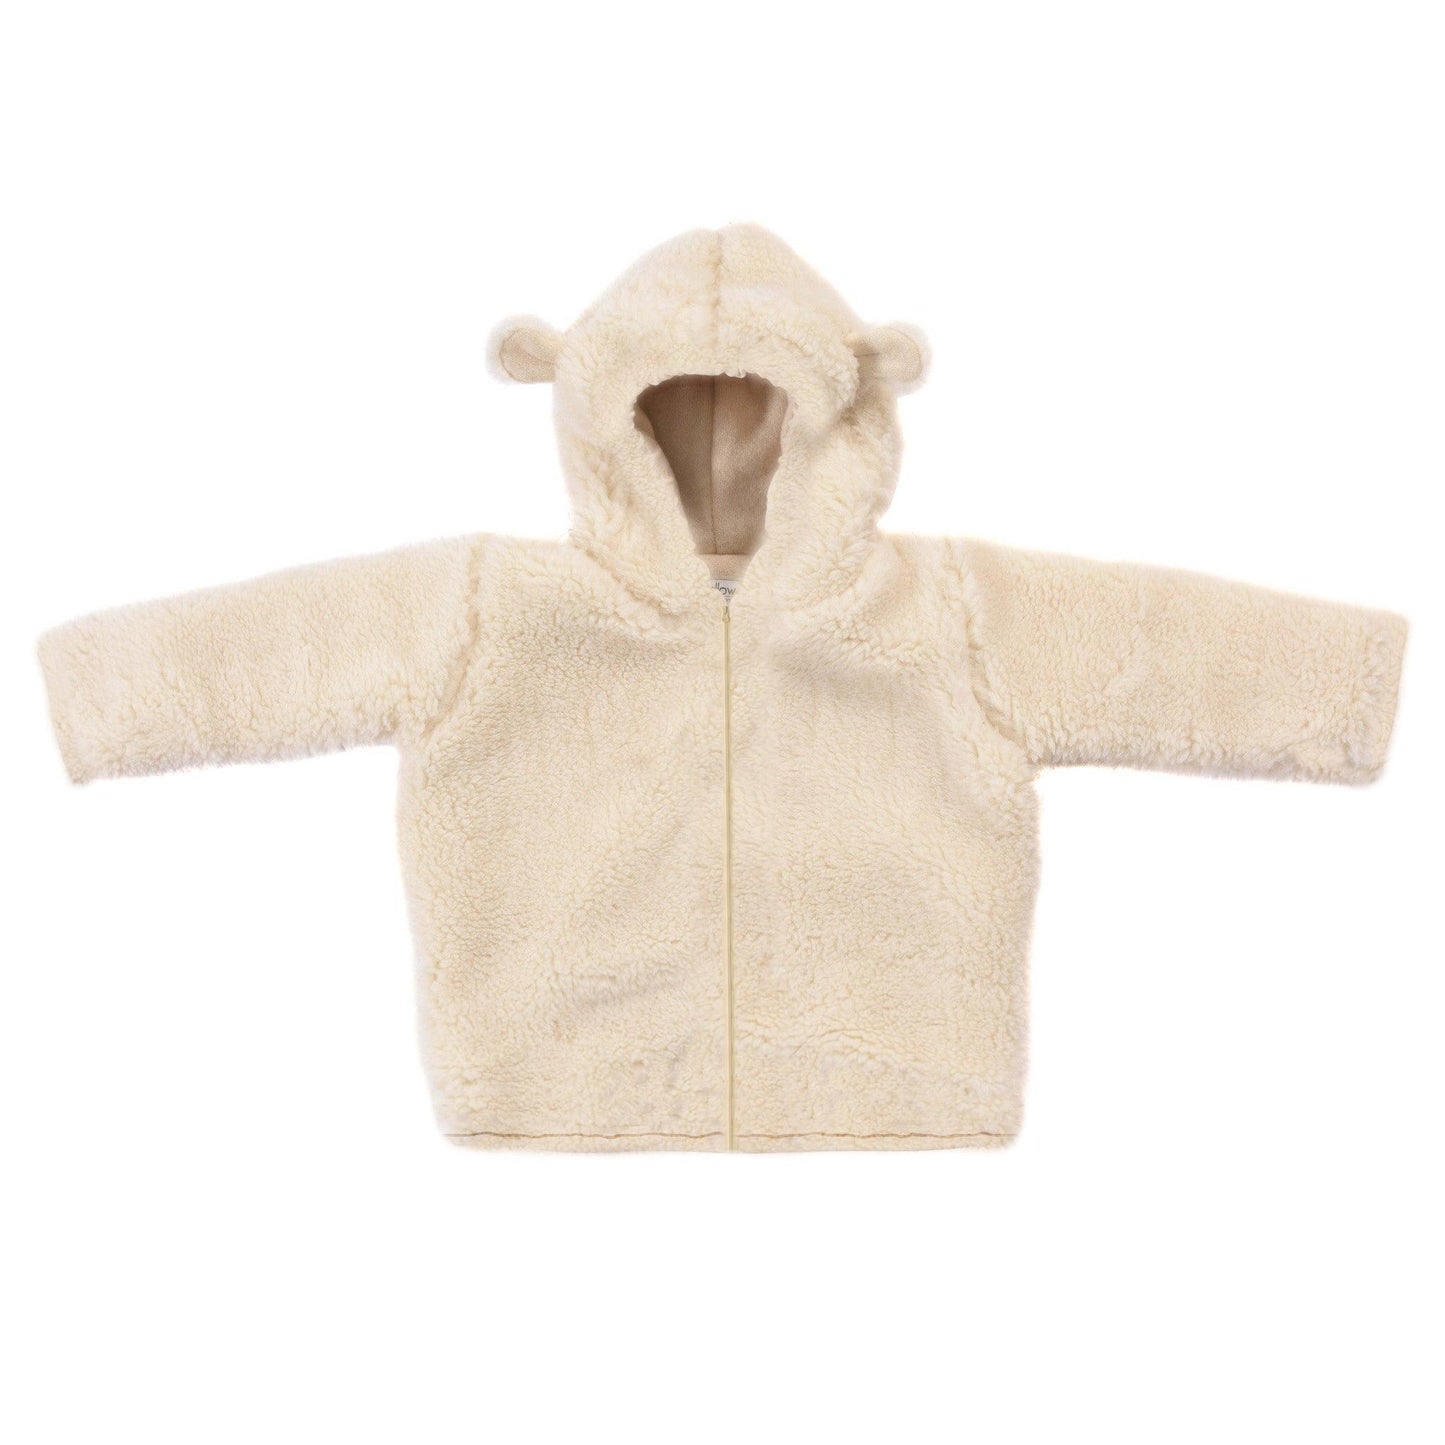 Baby/Kid Virgin Wool Jacket - White